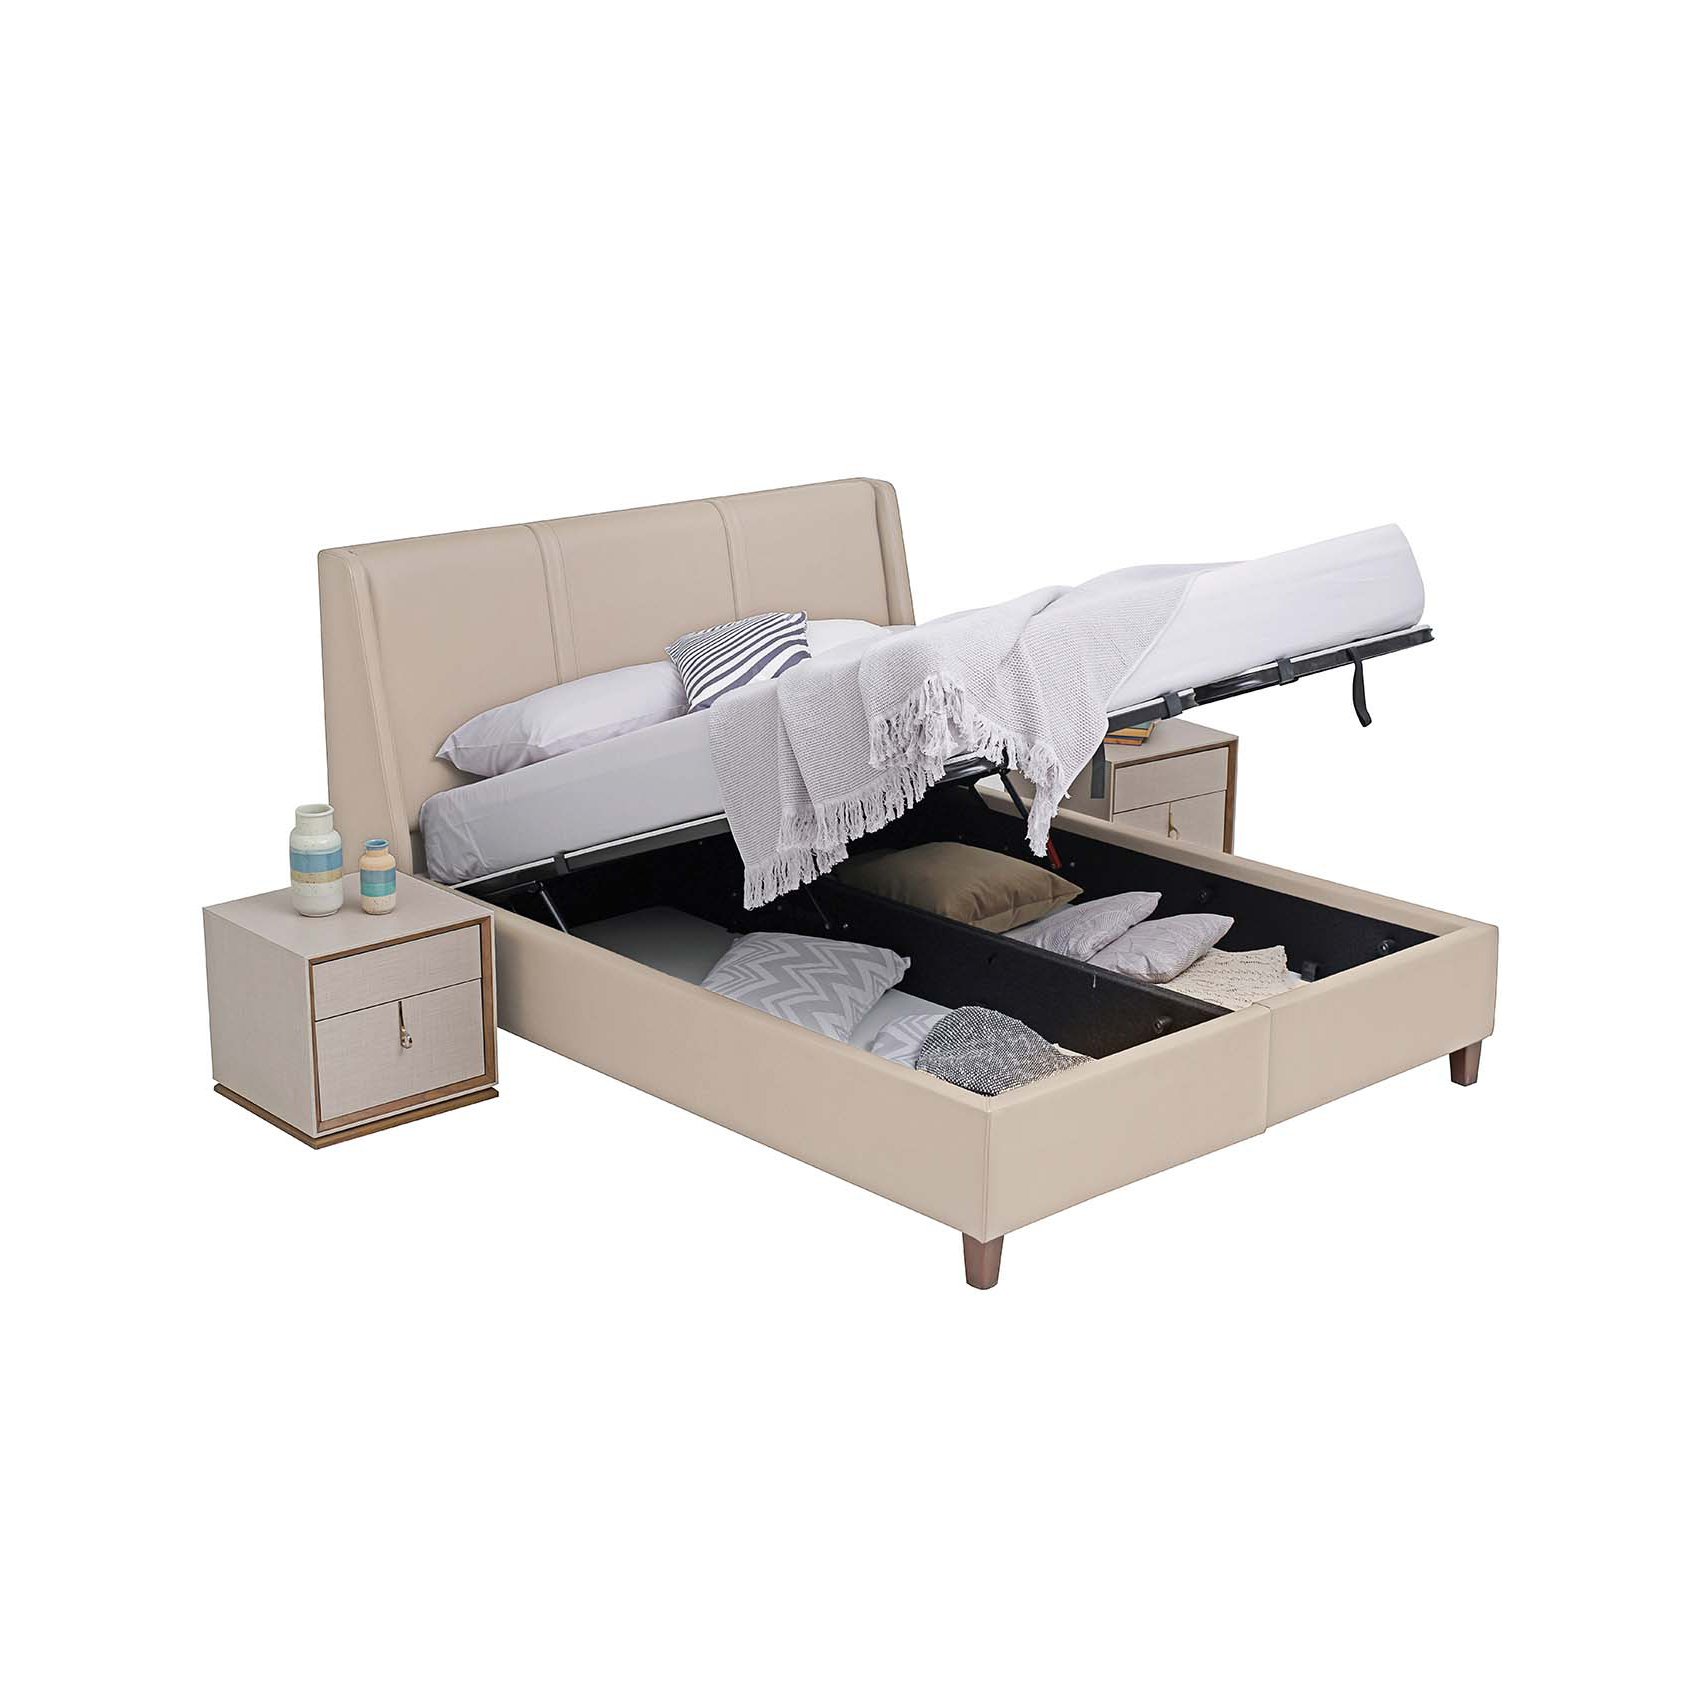 Кровать Enza Home Netha, двуспальная, с подъемным механизмом, 180х200 см, ткань 22102 Cream07.110.0516.1306.0008.0000.221+07.100.0516.1306.0017.0003.221